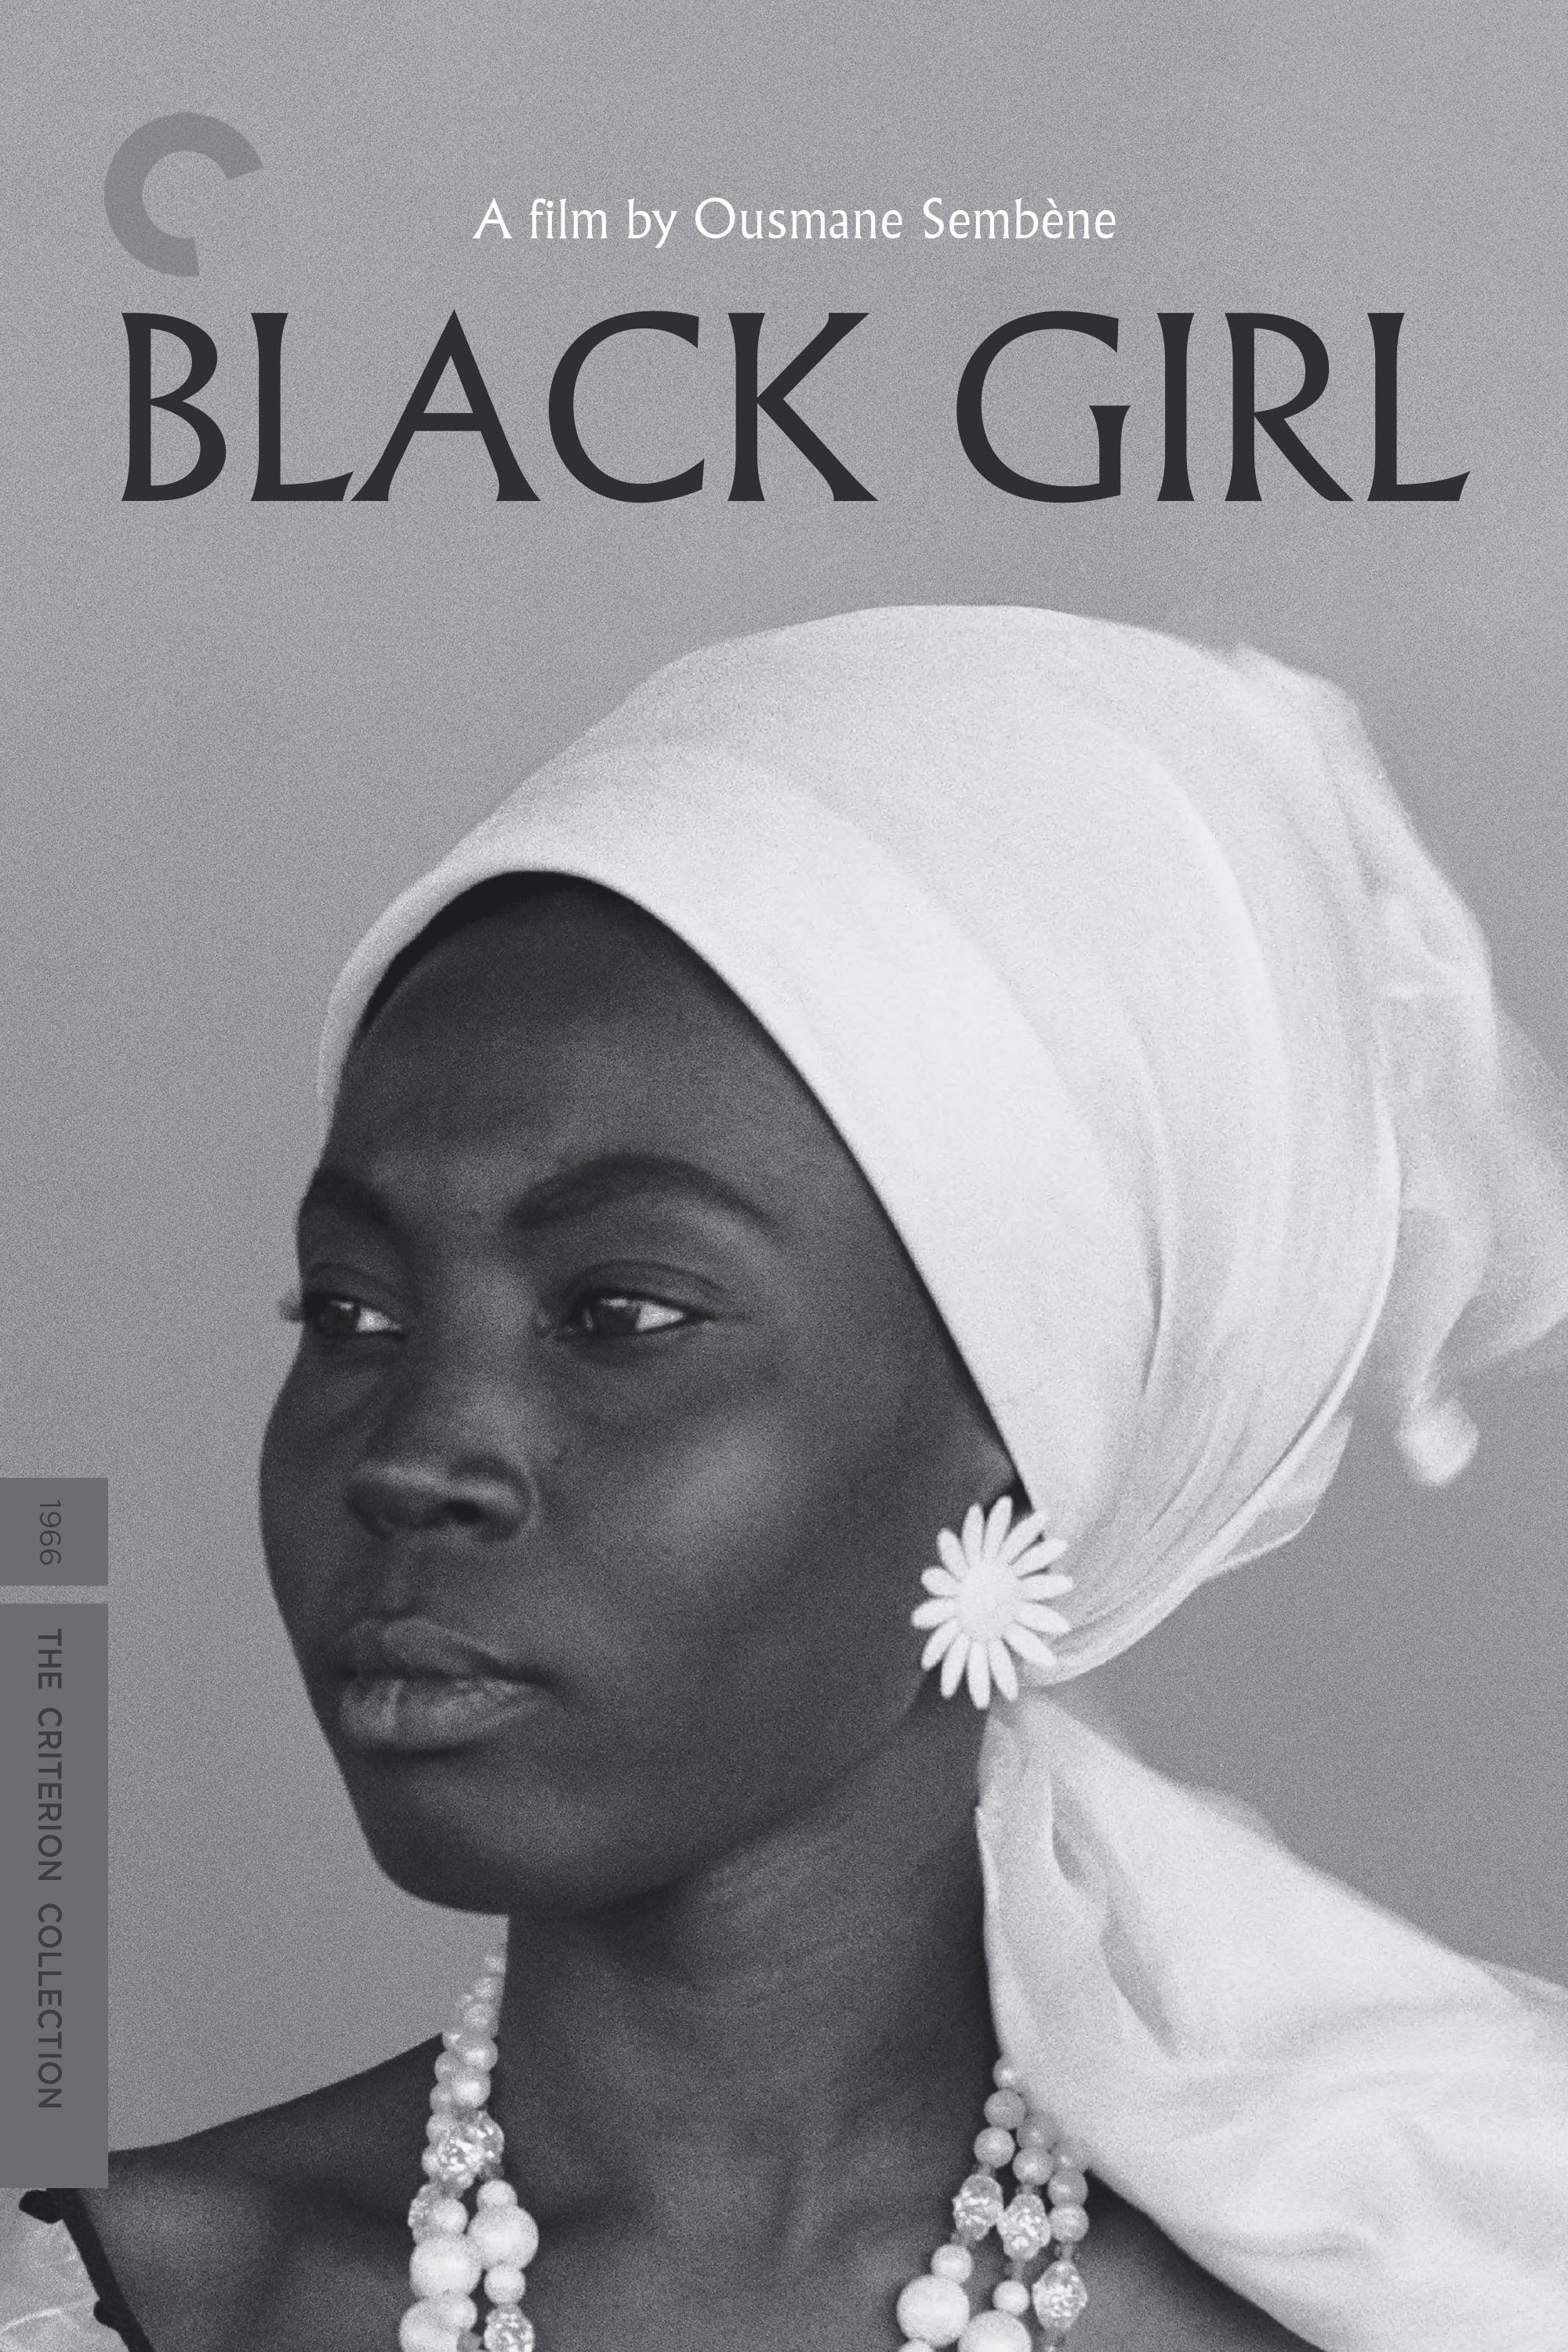 Black Girl poster